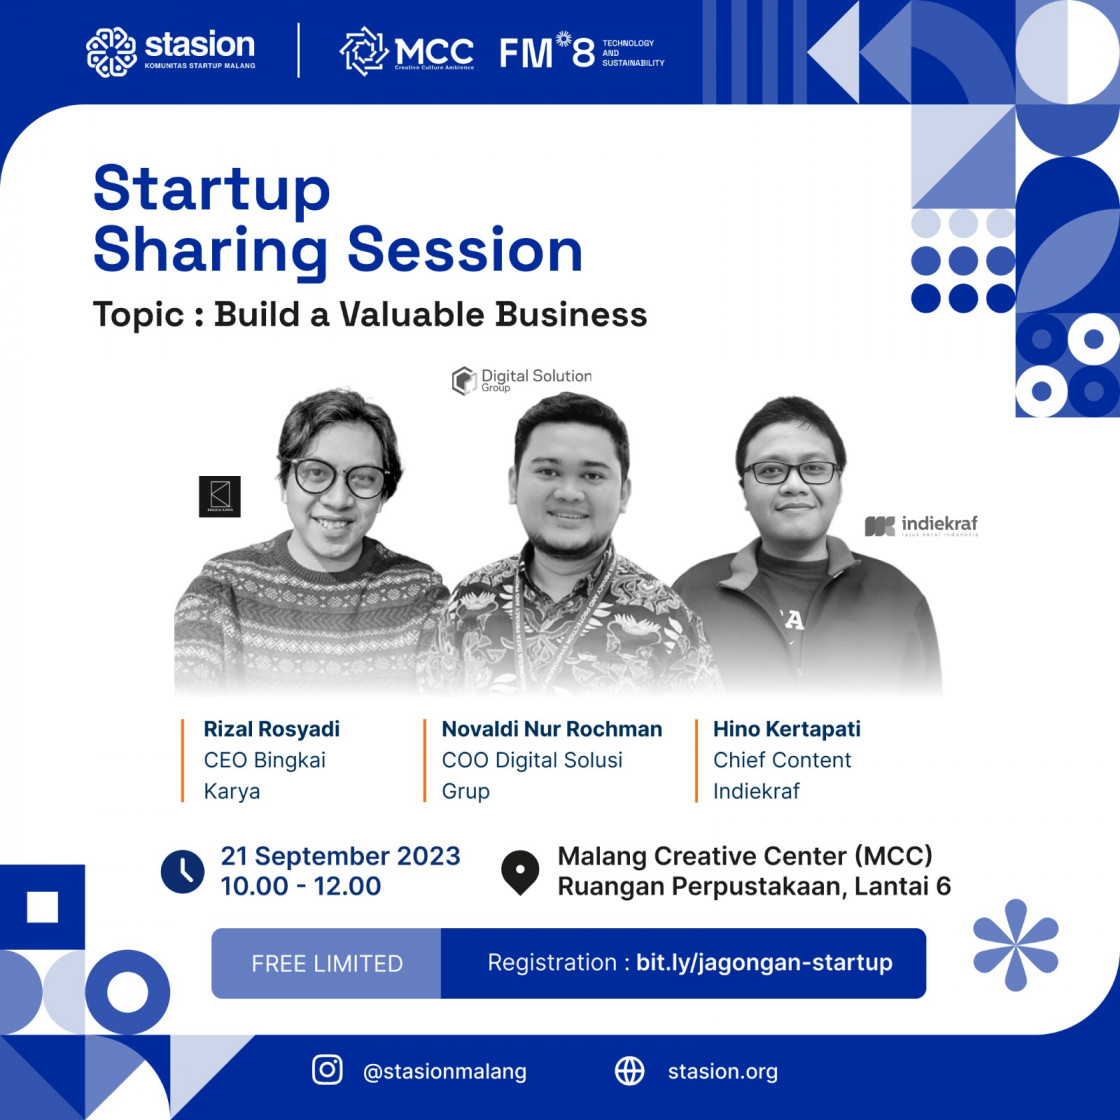 Jagongan Startup Malang-Startup Sharing Session : Build a Valuable Business